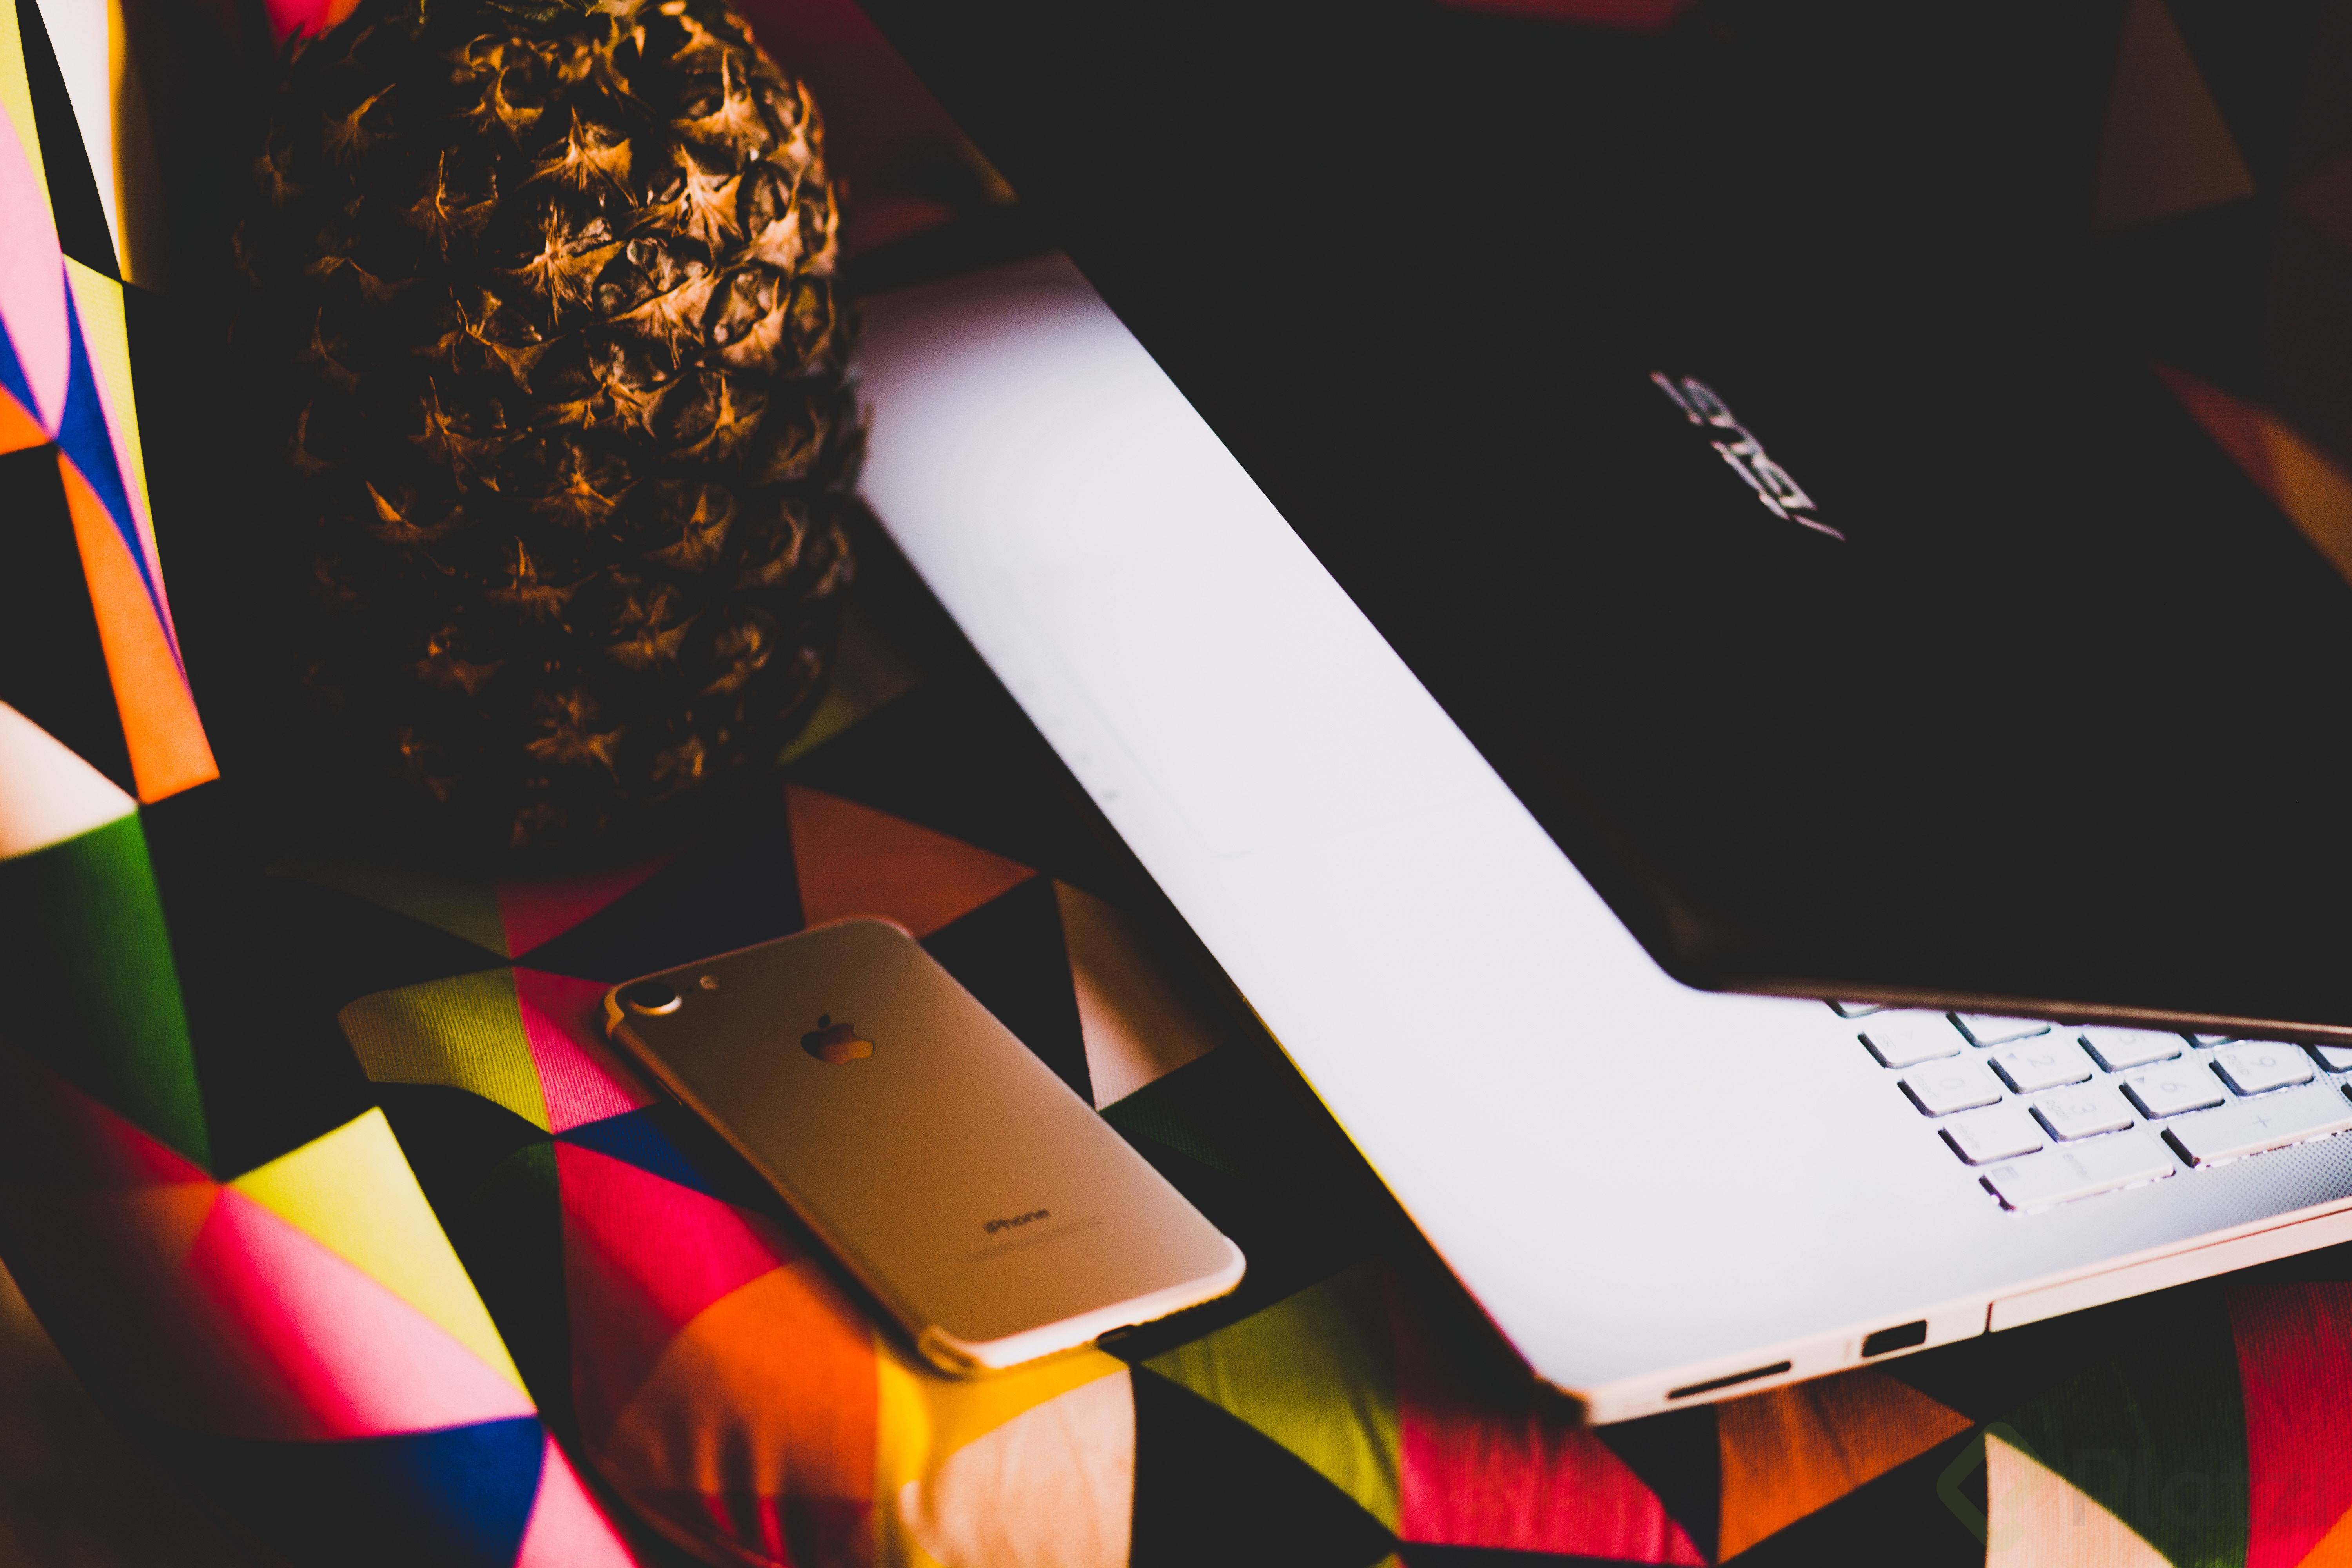 Una piña, un iPhone y una laptop sobre una mesa con un mantel de colores